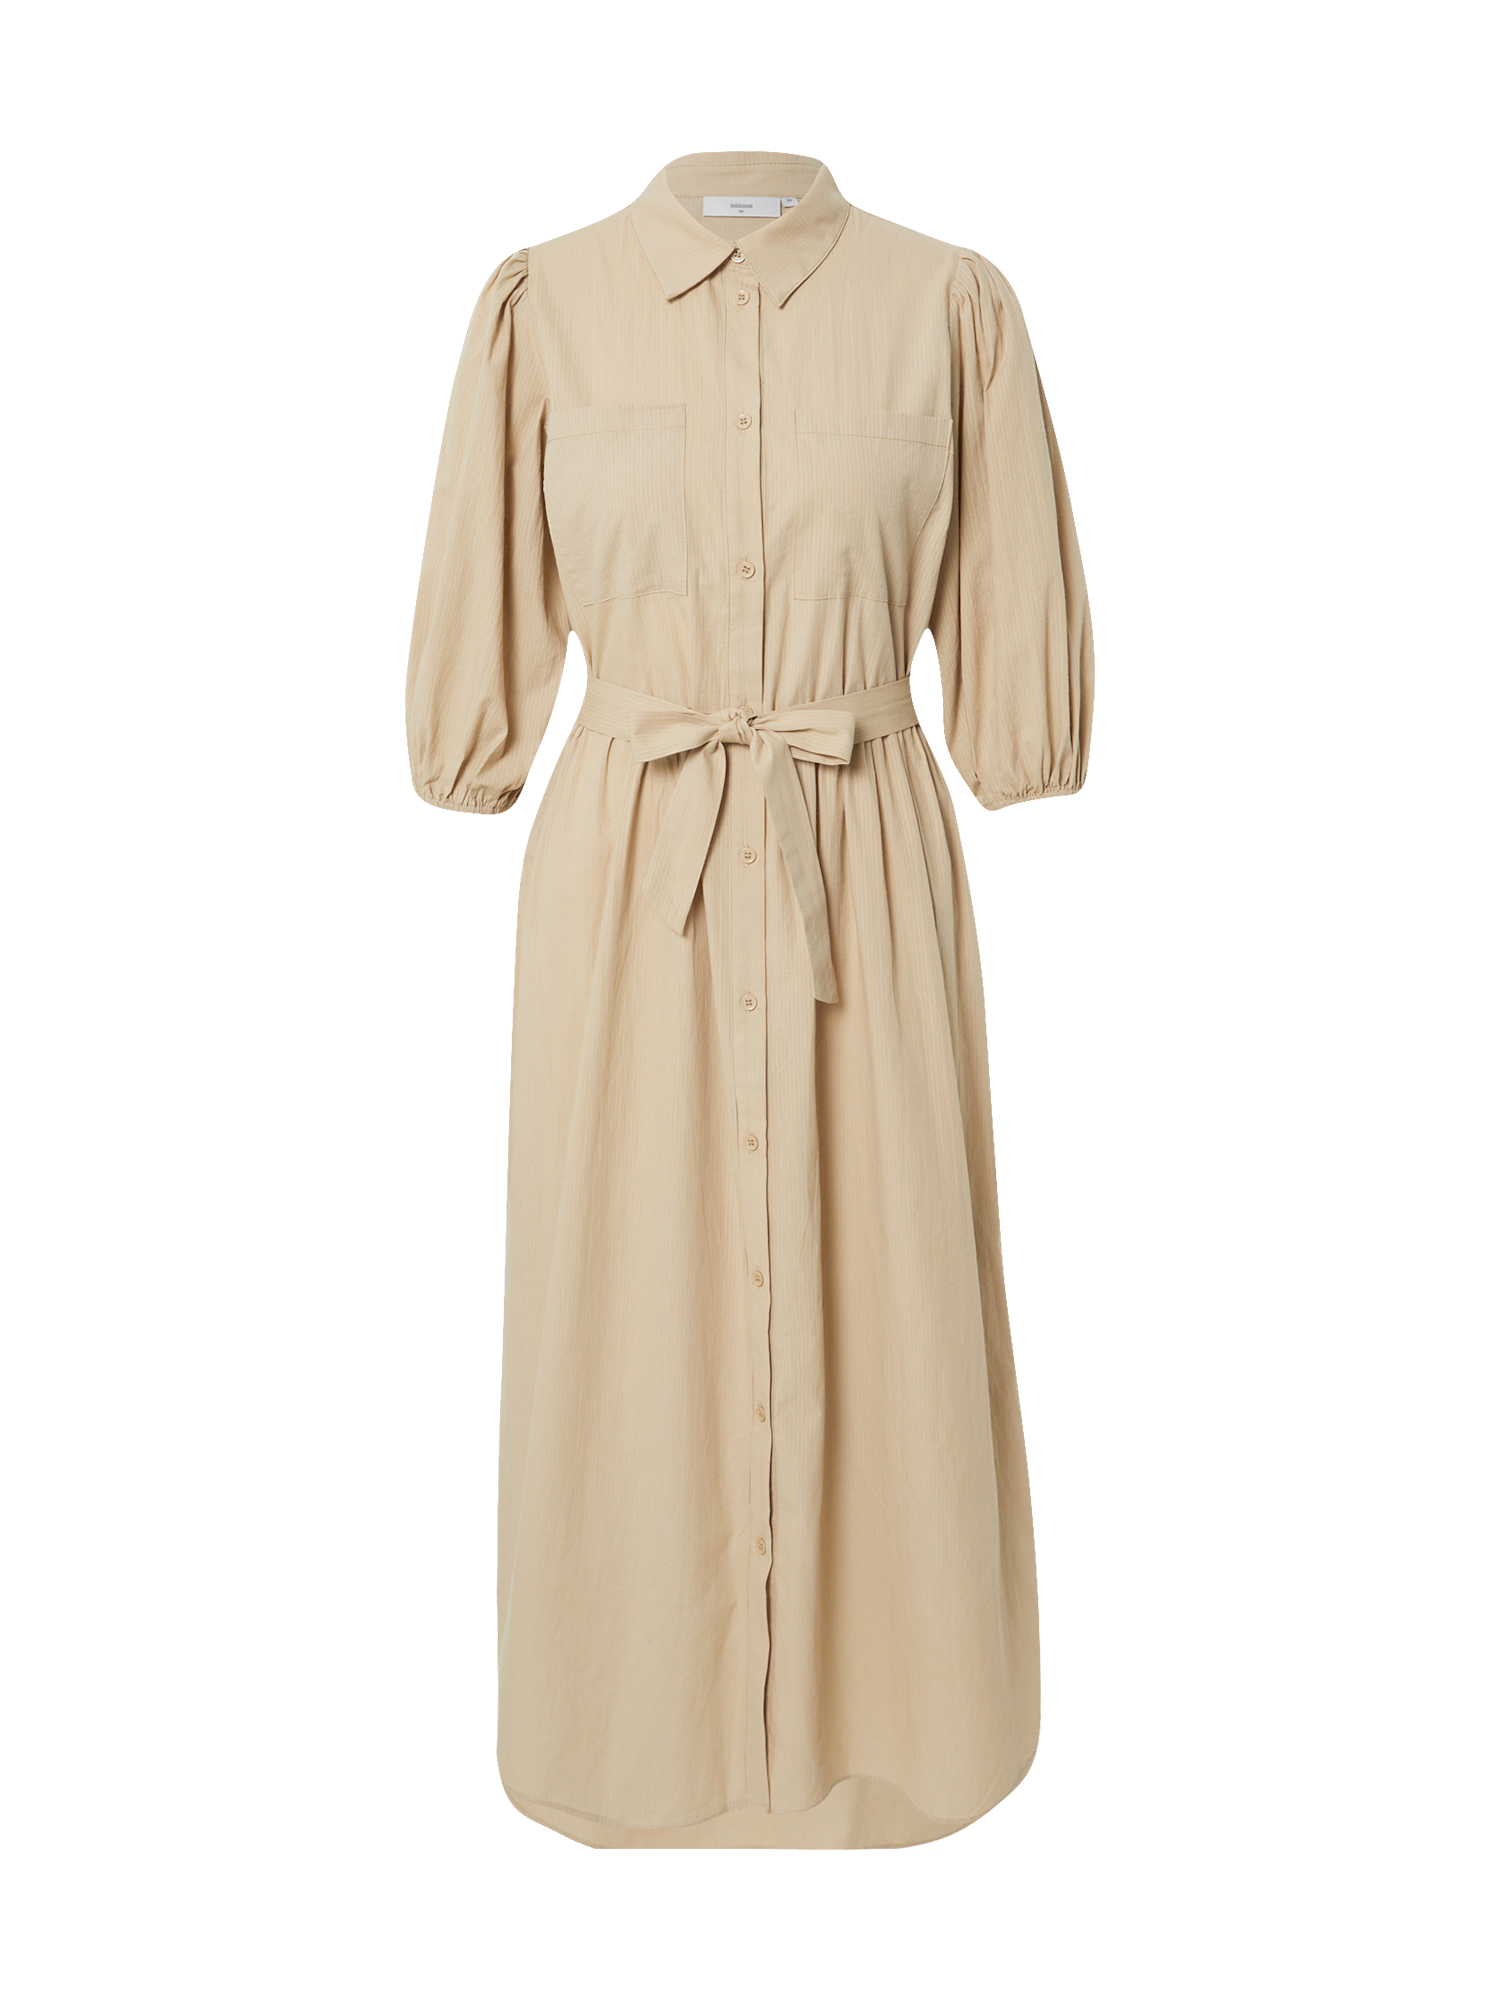 Odzież Specjalne okazje minimum Sukienka koszulowa MYSALINA w kolorze Khakim 